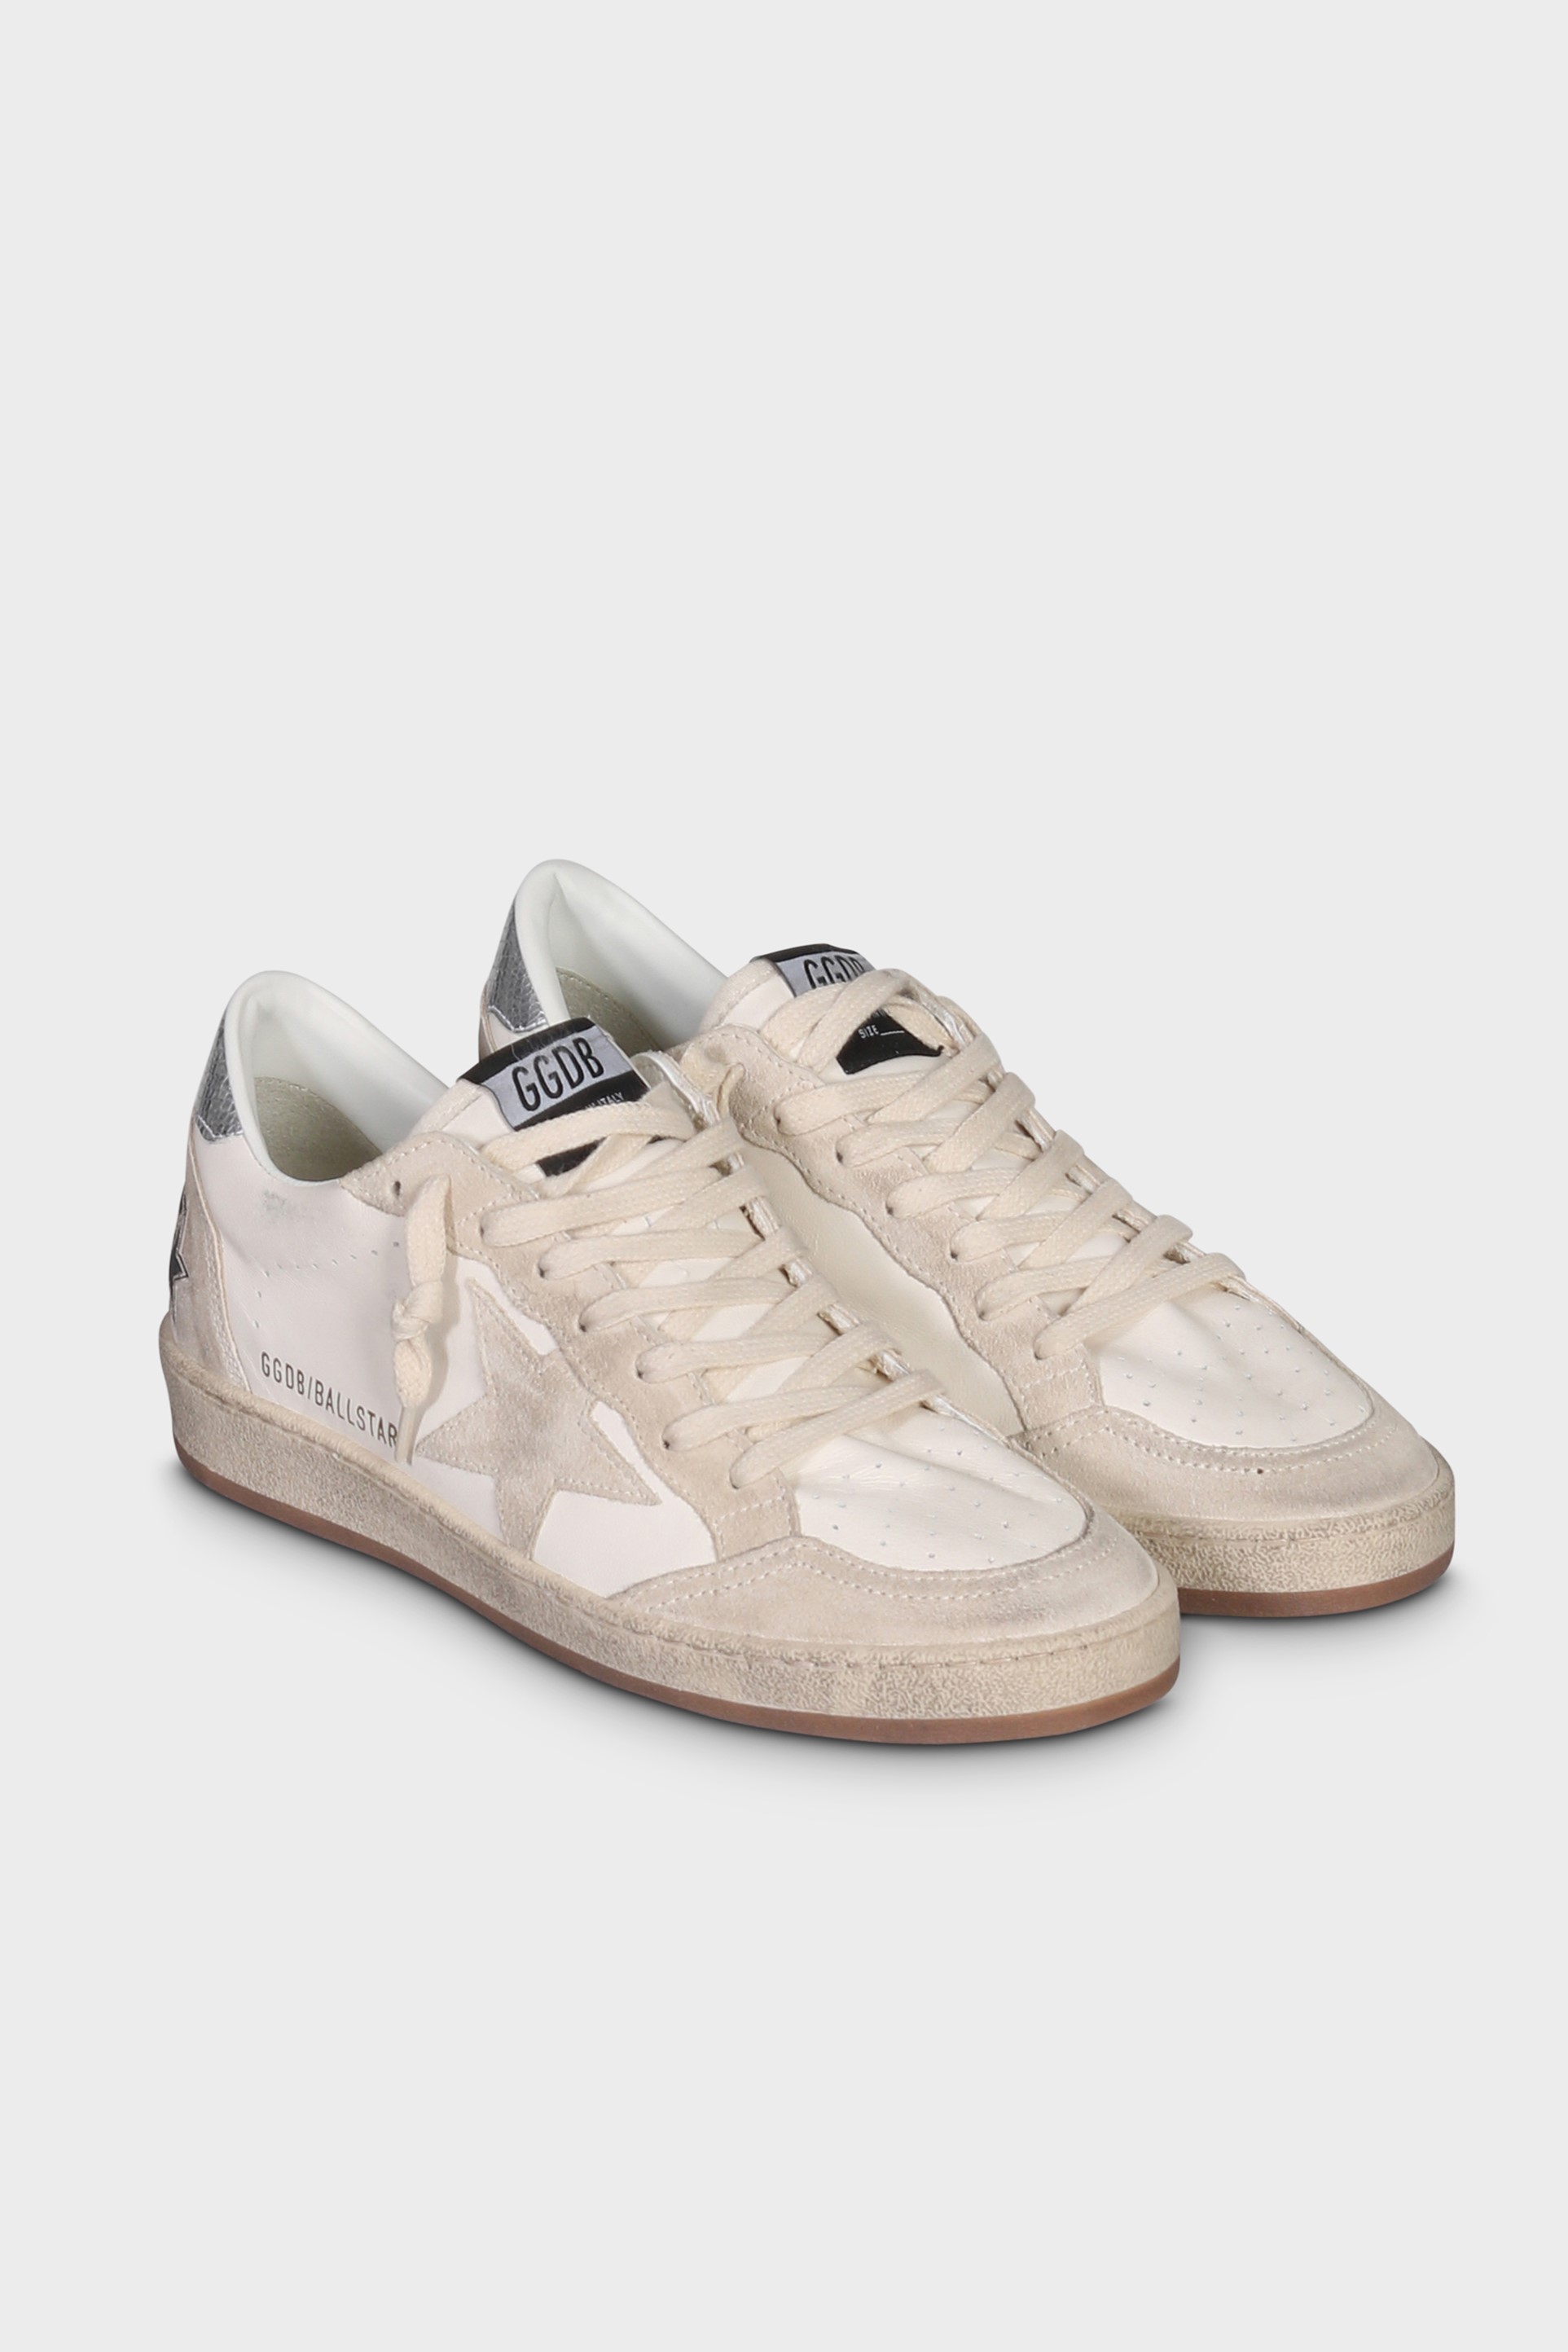 GOLDEN GOOSE Sneaker Ballstar in White/Seedpearl/Silver 40